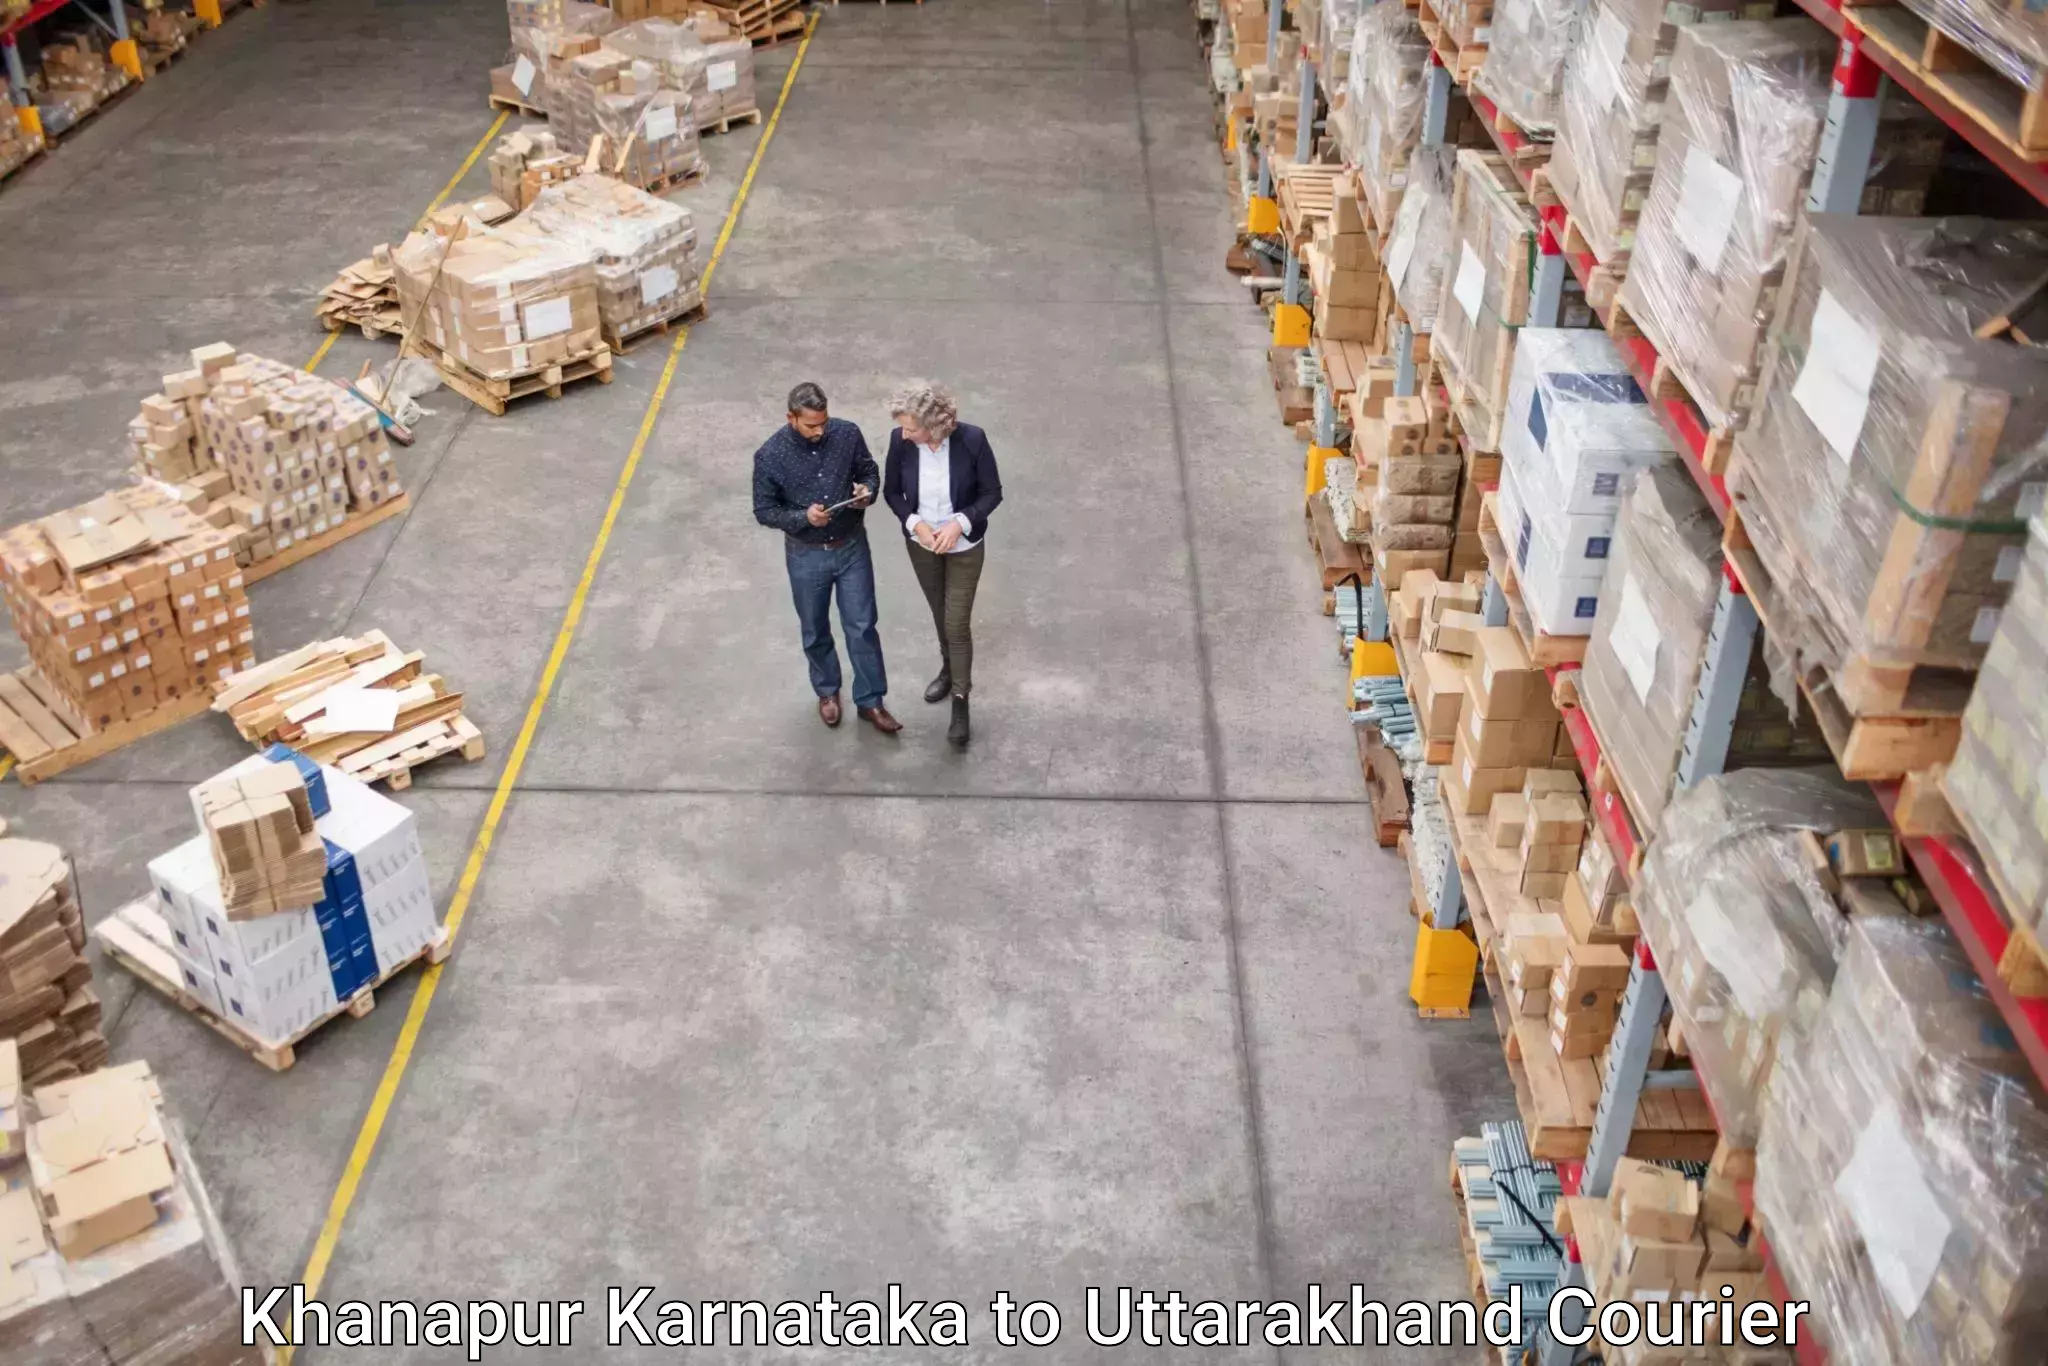 Efficient parcel service Khanapur Karnataka to Gairsain